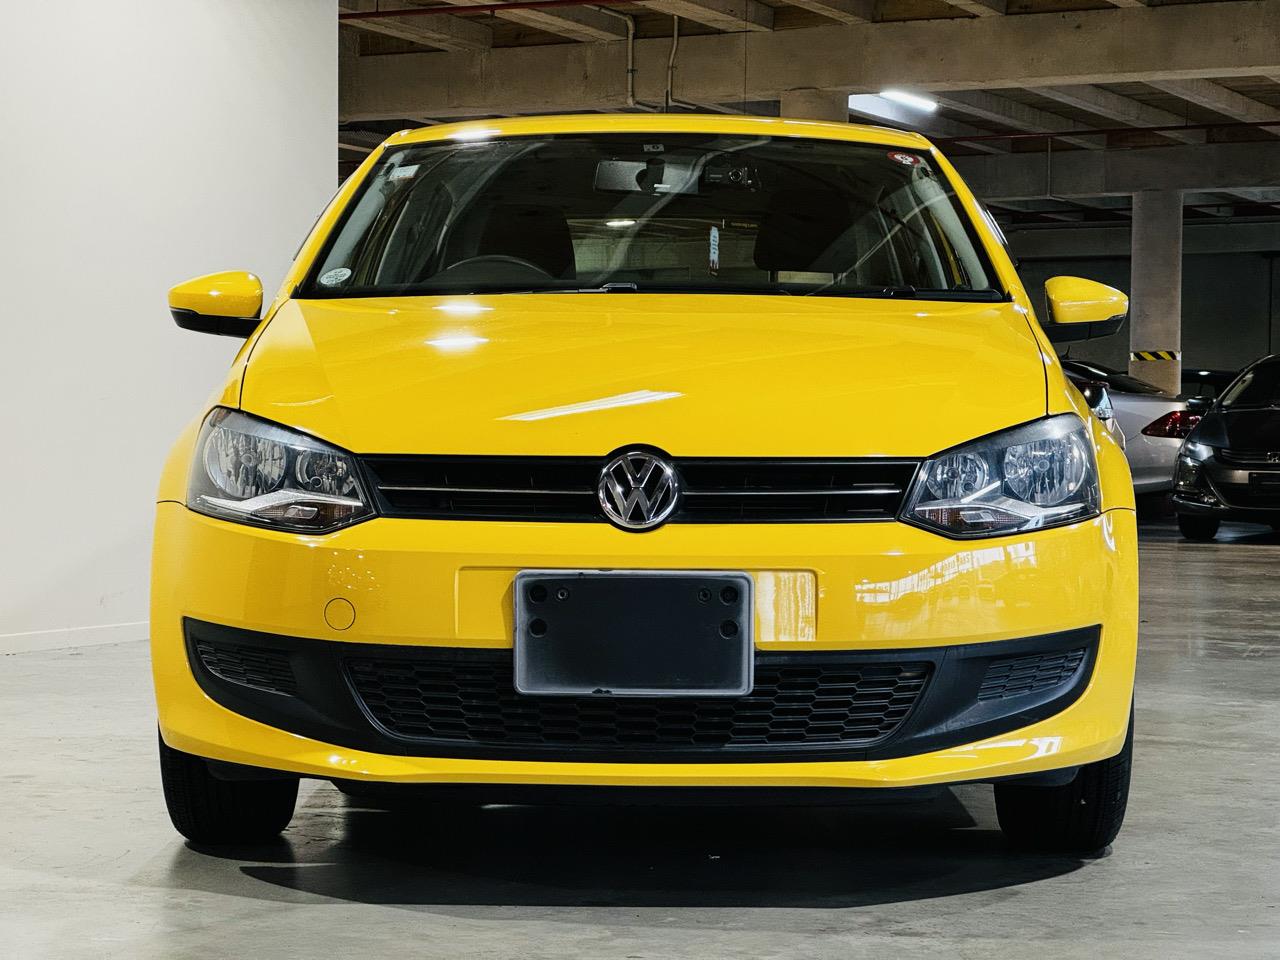 2011 Volkswagen Polo